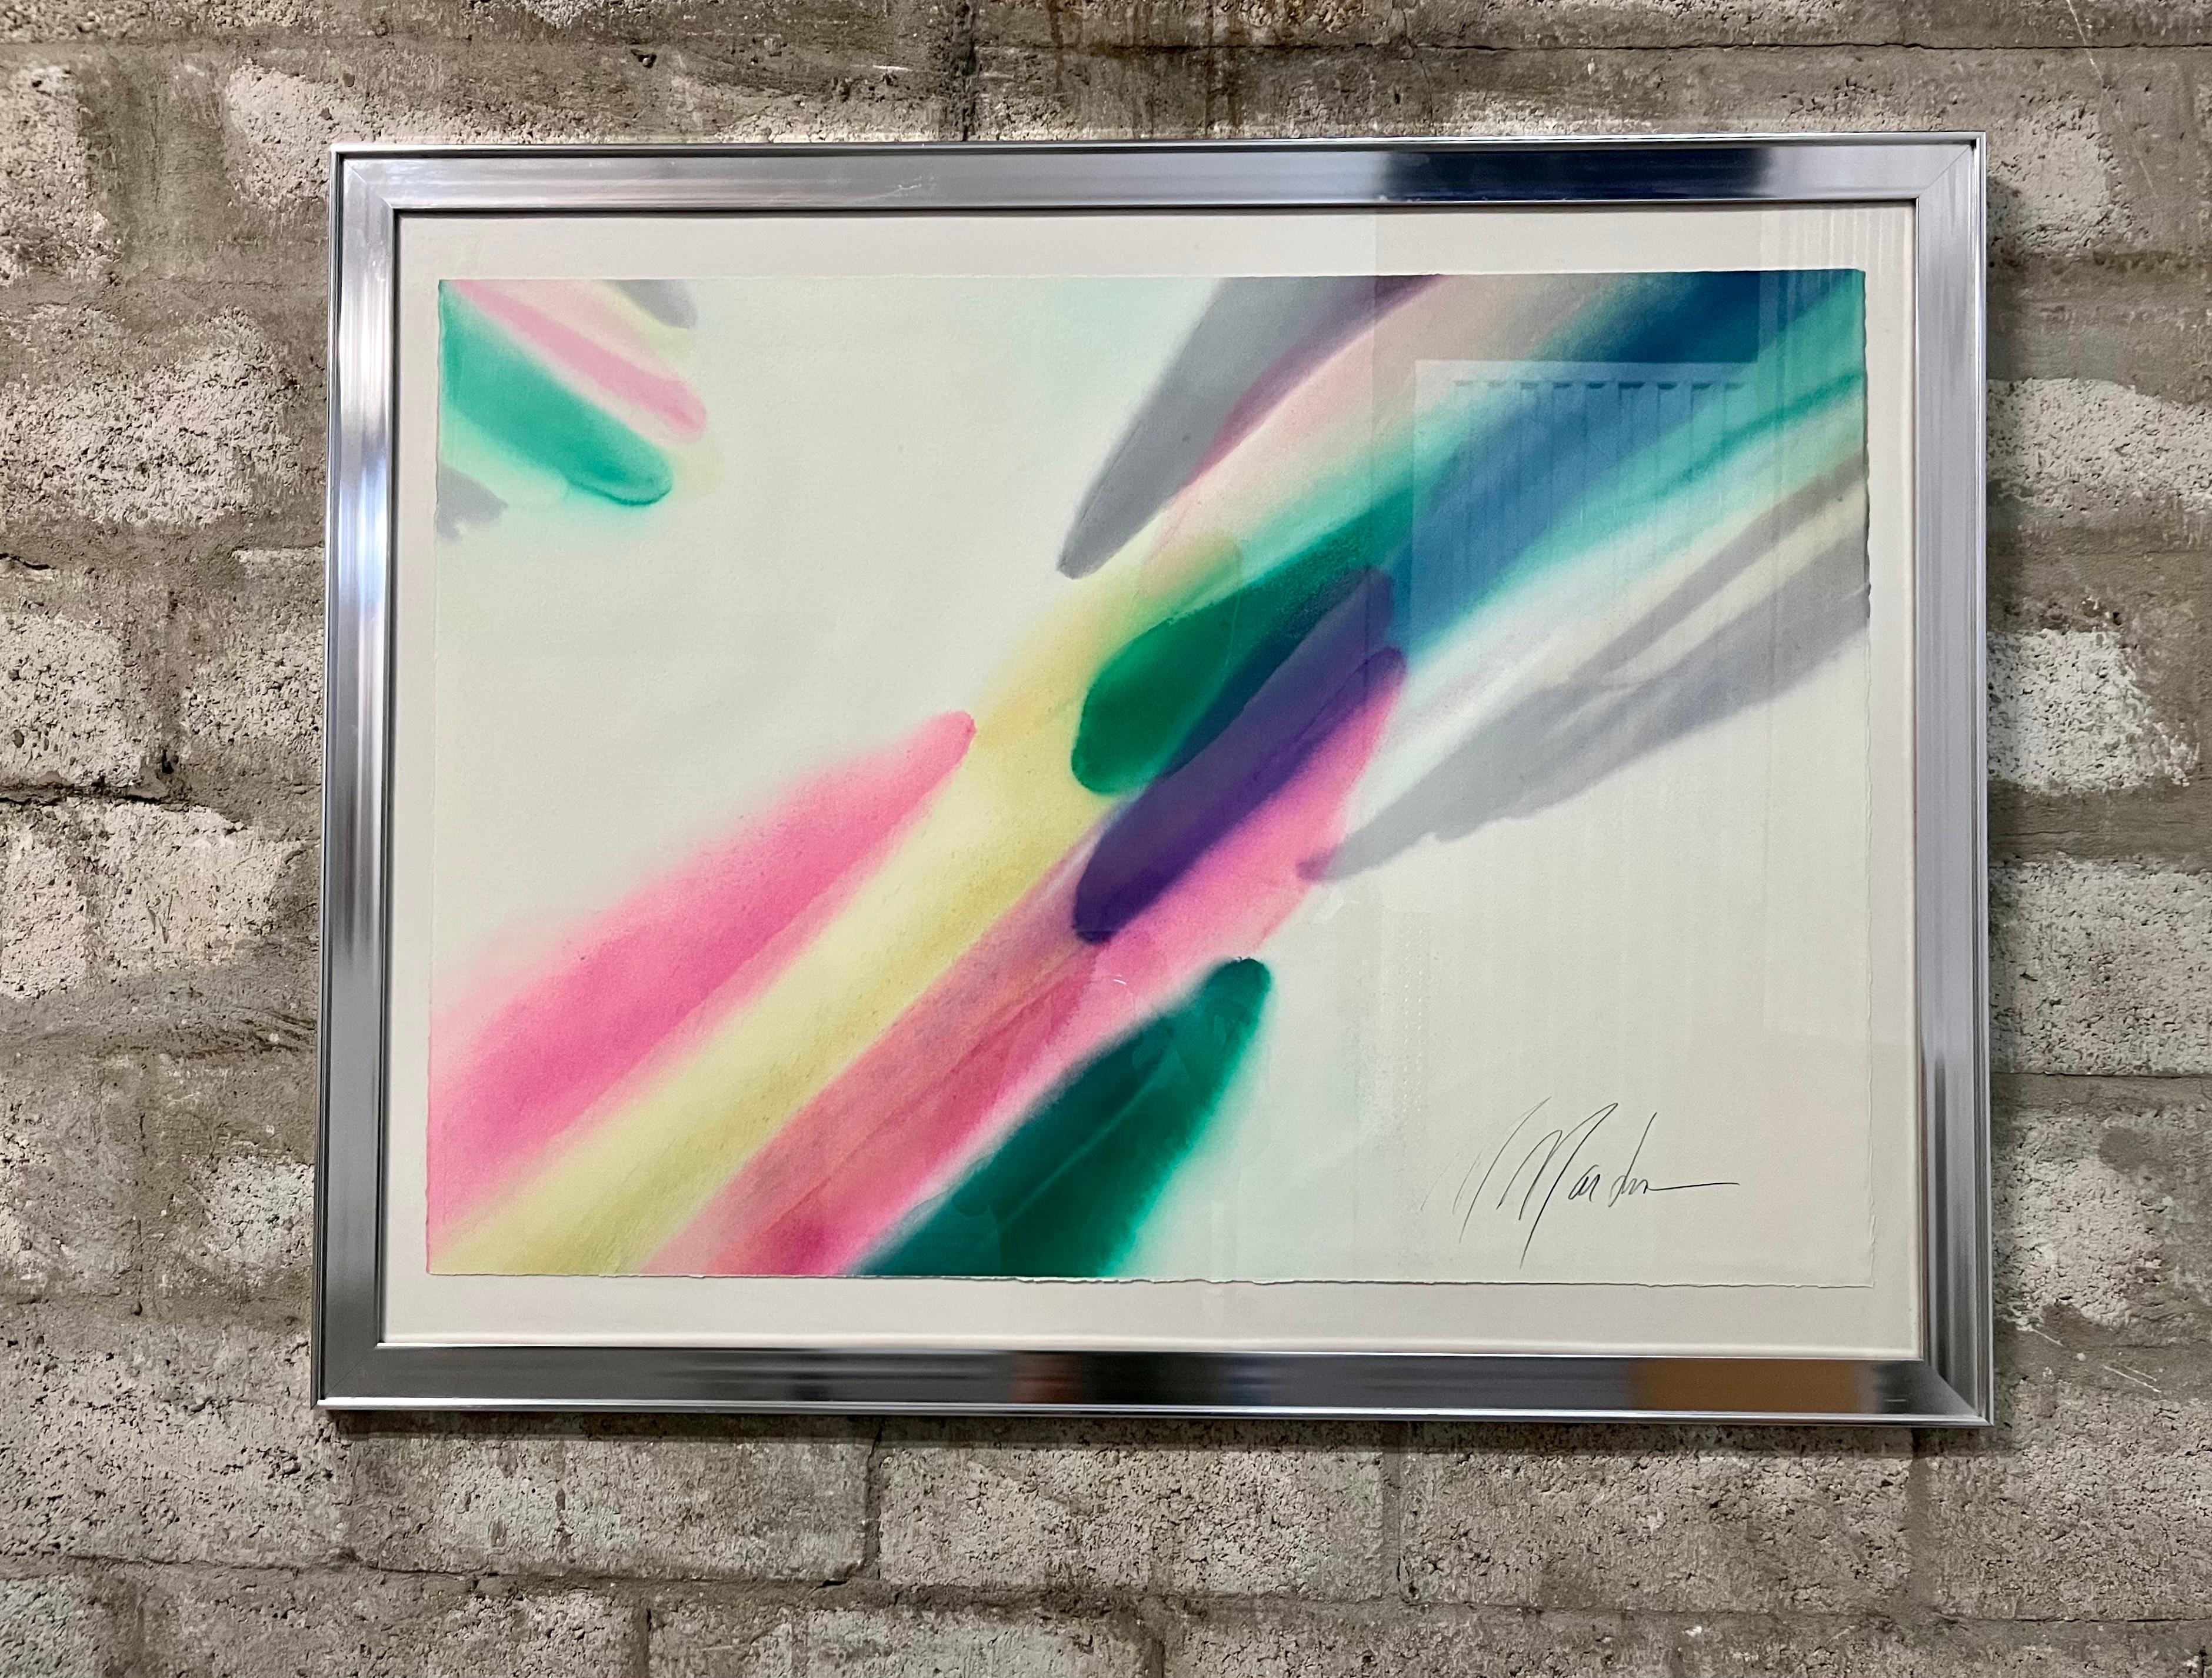 Peinture postmoderne abstraite à grande échelle, encadrée, aux couleurs délavées, dans le style d'Helen Frankenthaler. Vers les années 70. 
Signée en bas à droite au crayon par l'artiste (Probablement M. Martin)
Encadré sous verre dans un cadre